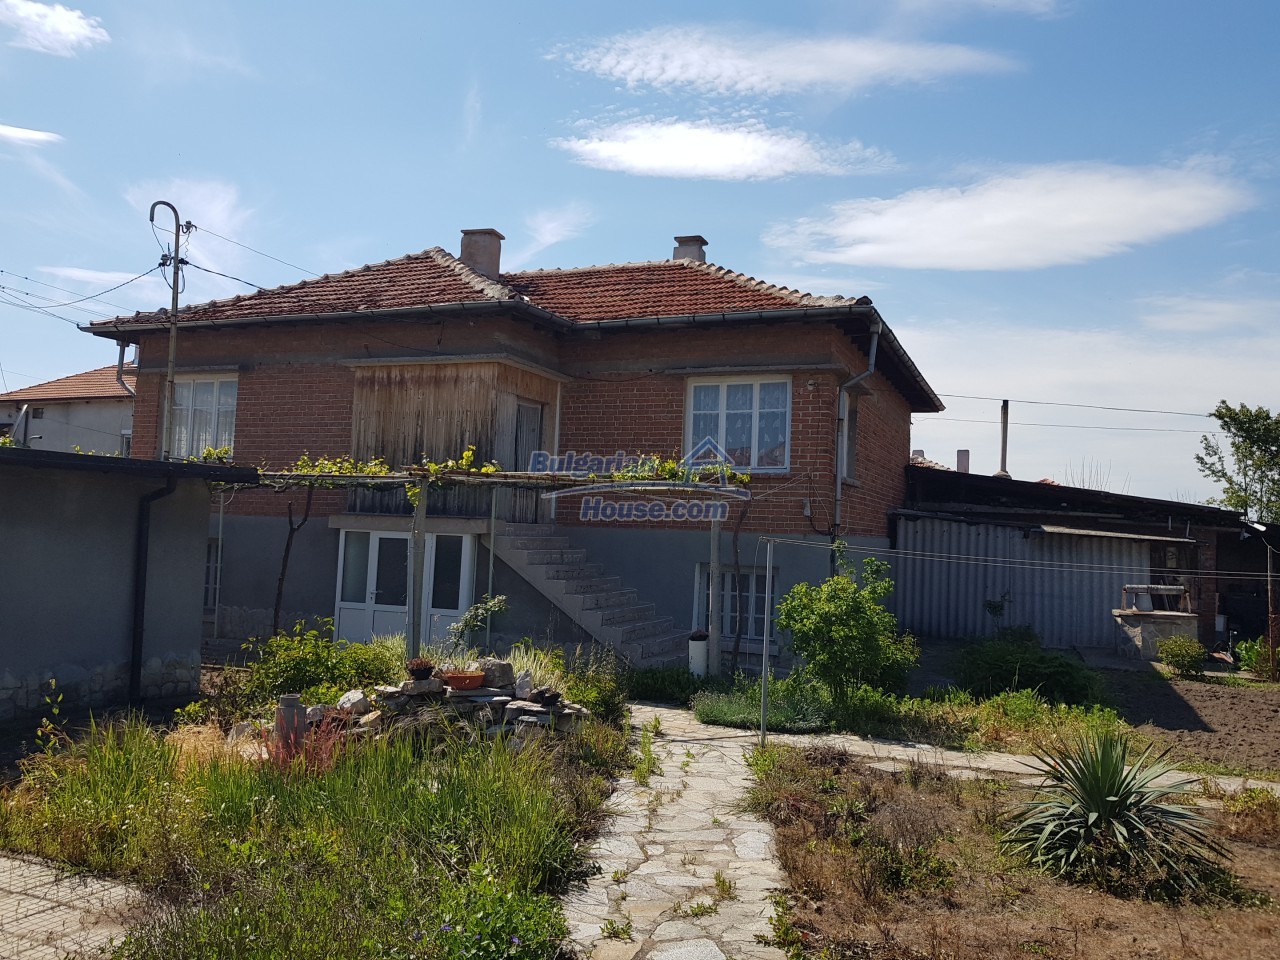 Houses for sale near Haskovo - 14411